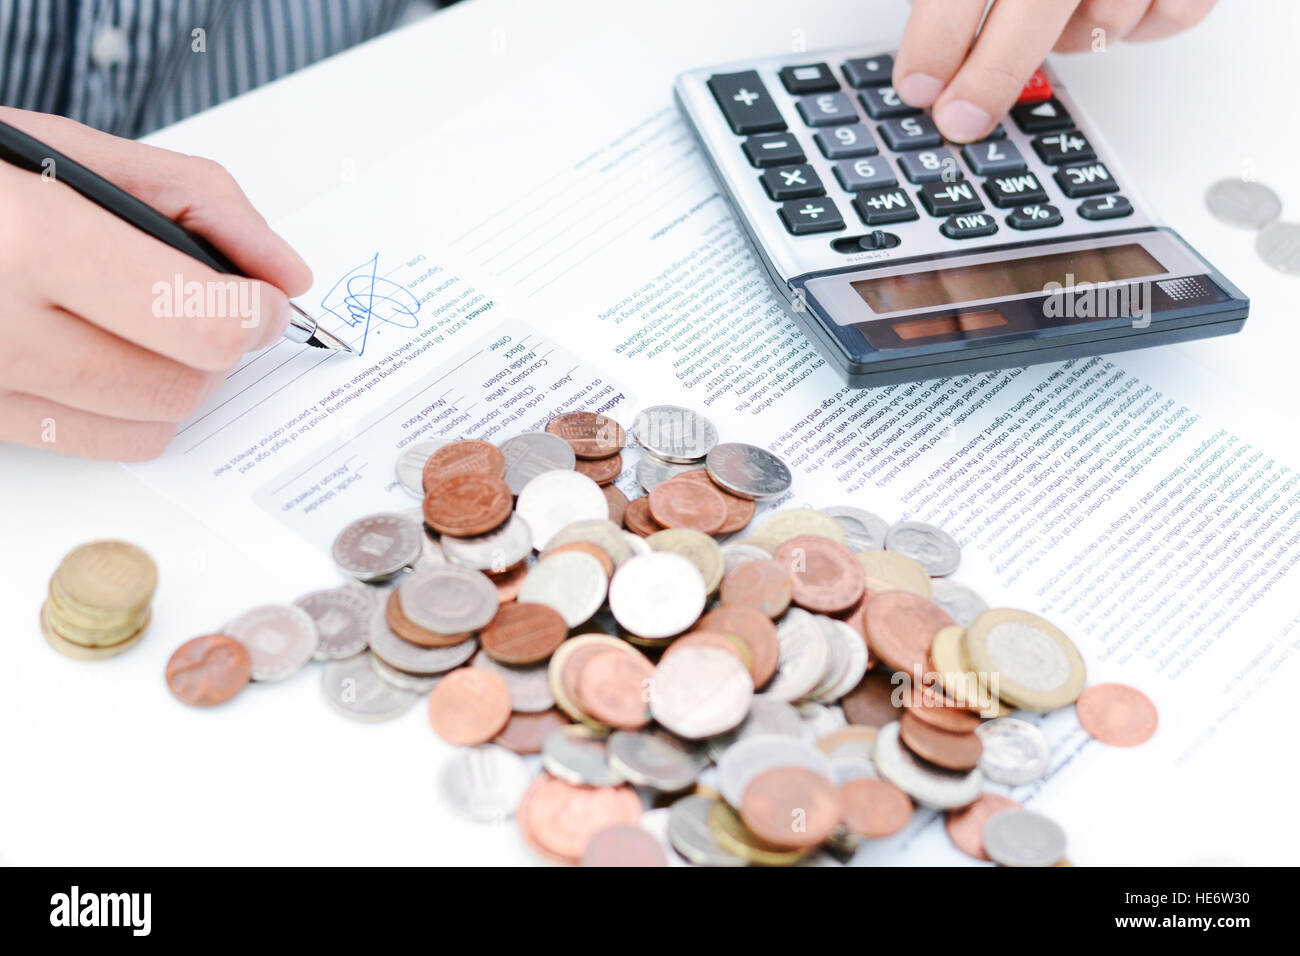 Calcul de l'impôt nouveau ou accord de prêt avec calculatrice de poche et des pièces Banque D'Images